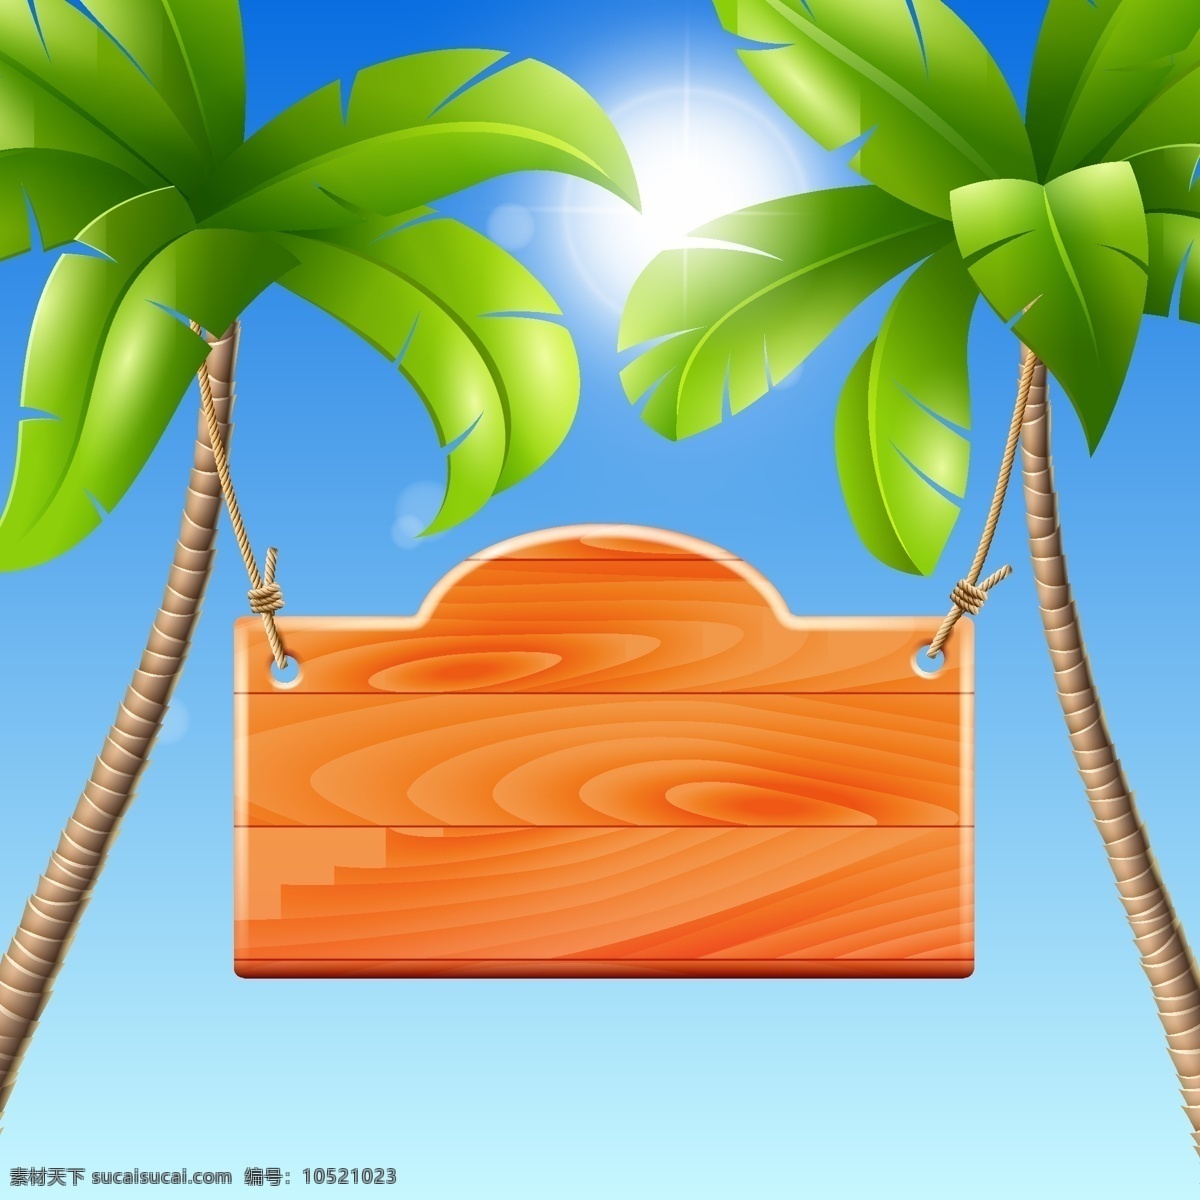 创意 椰树 挂牌 海南 海岛 风情 矢量图 其他矢量图